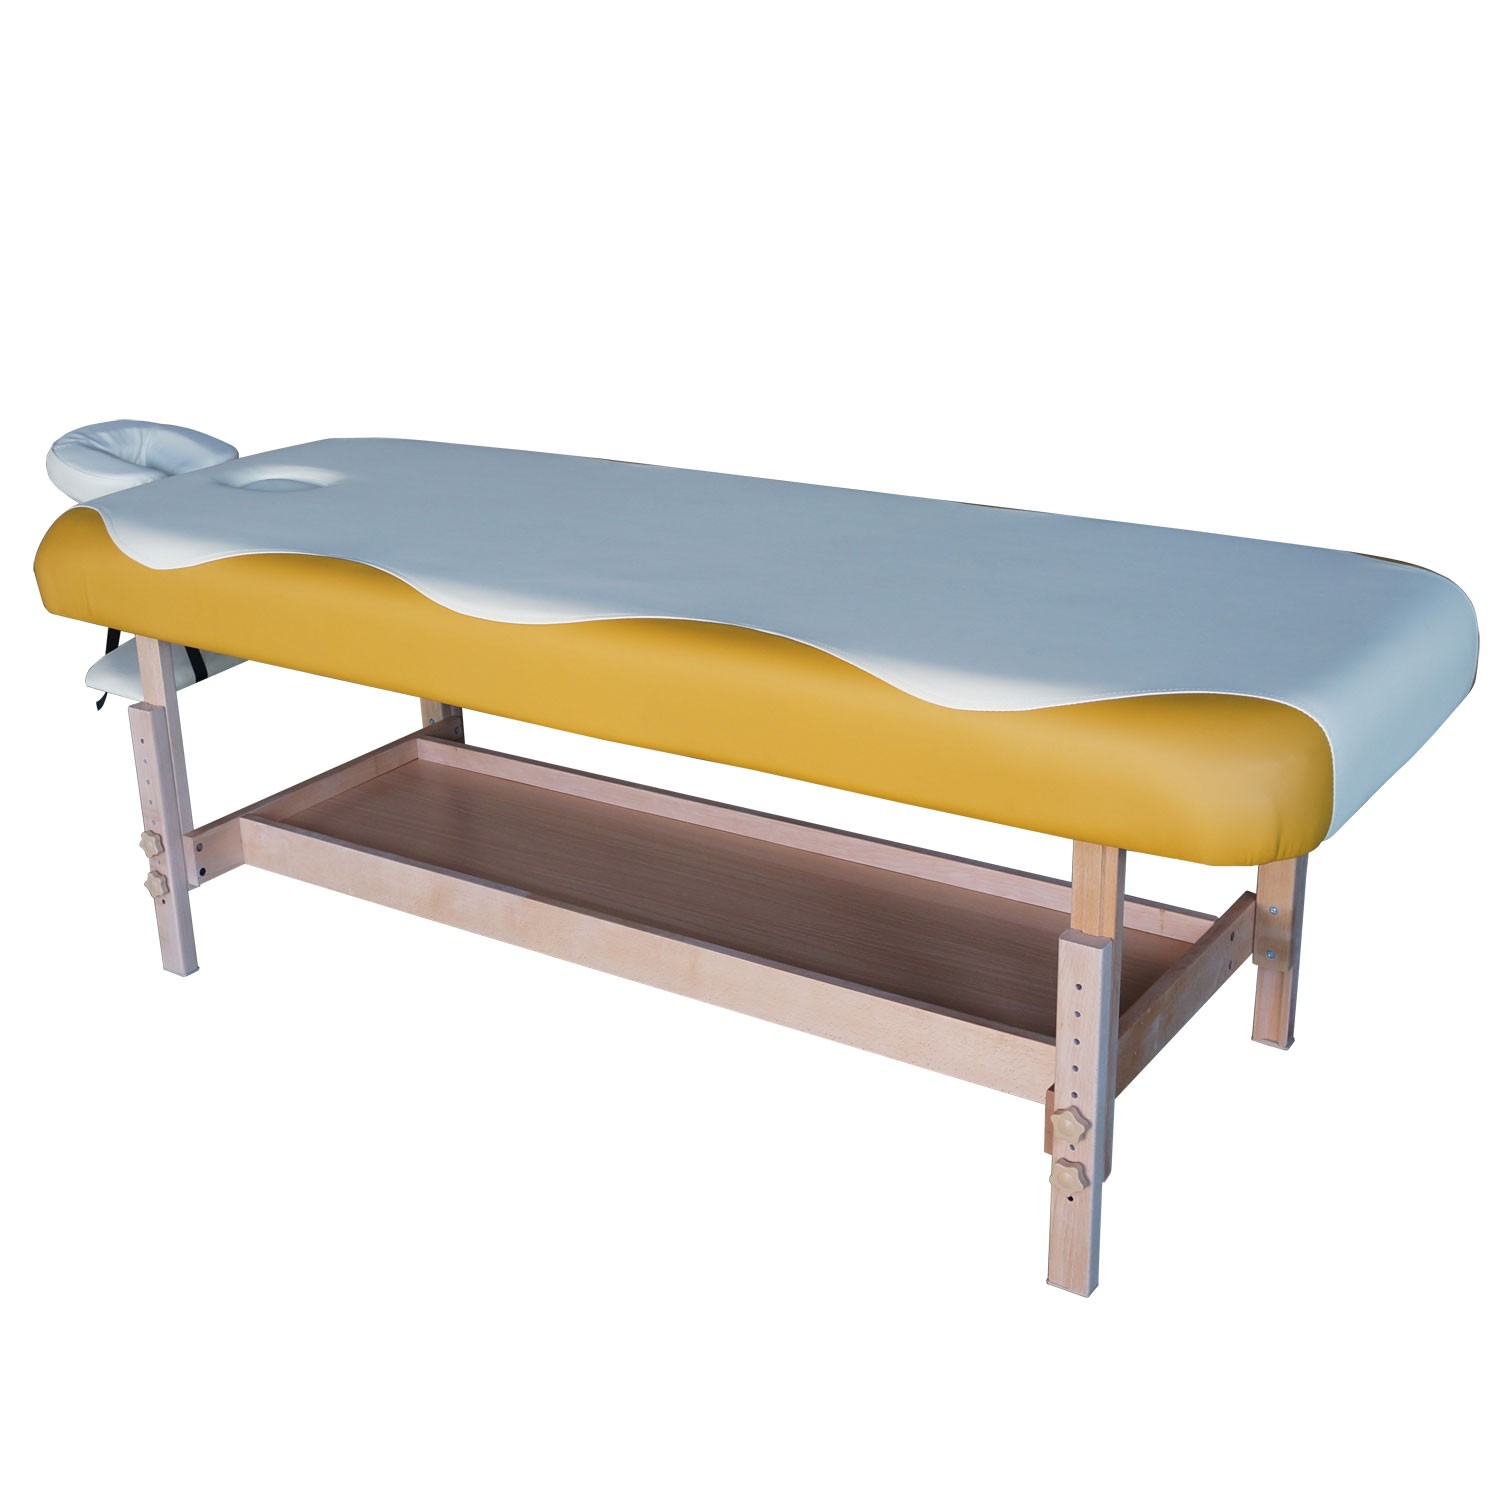 Массажный стационарный стол DFC NIRVANA, SUPERIOR, 1 секция, цвет бежевый/желтым, изображение 3